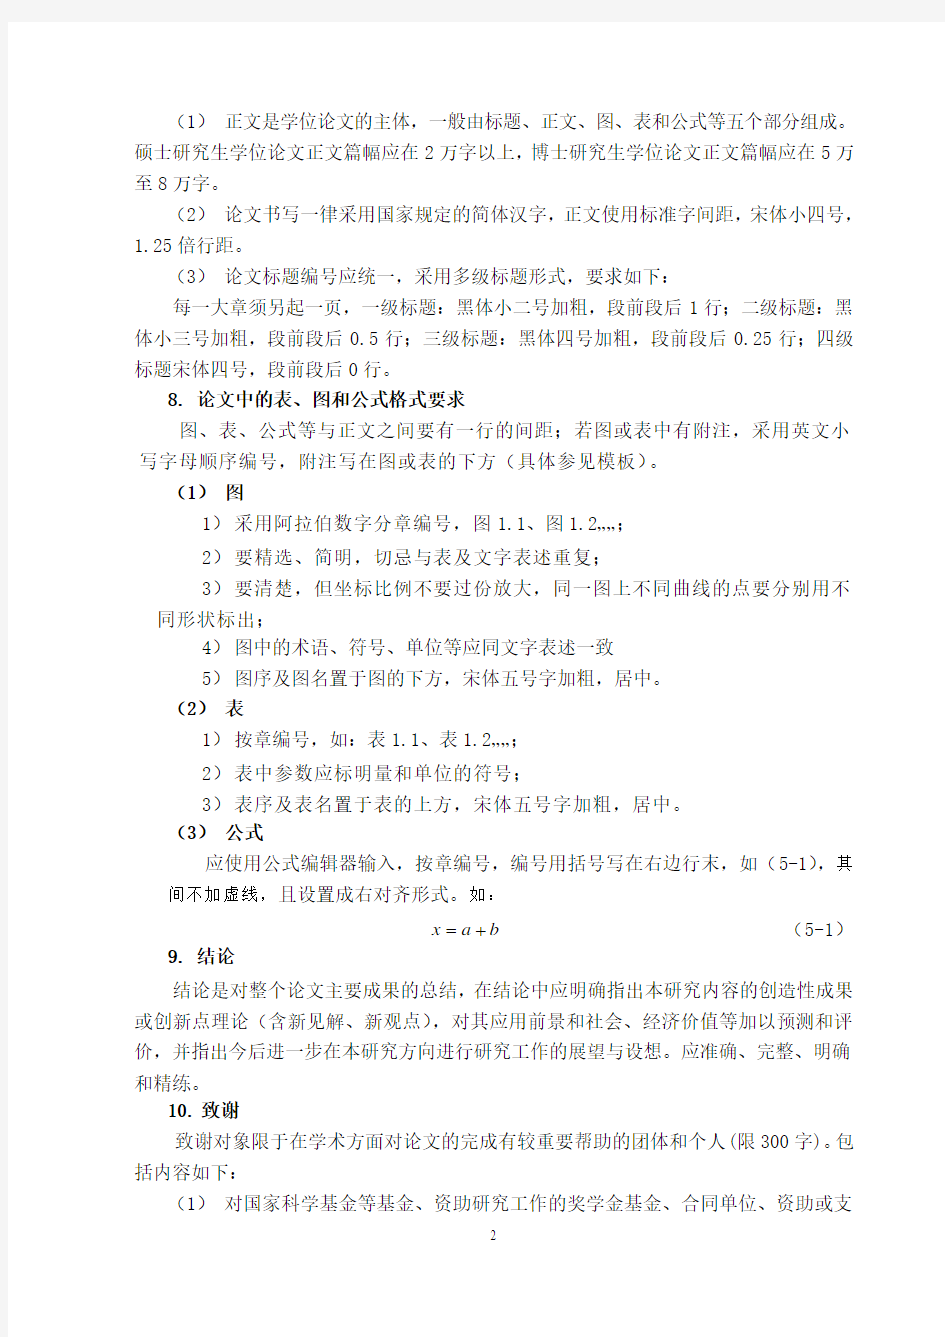 武汉科技大学关于学位论文撰写格式统一要求的规定